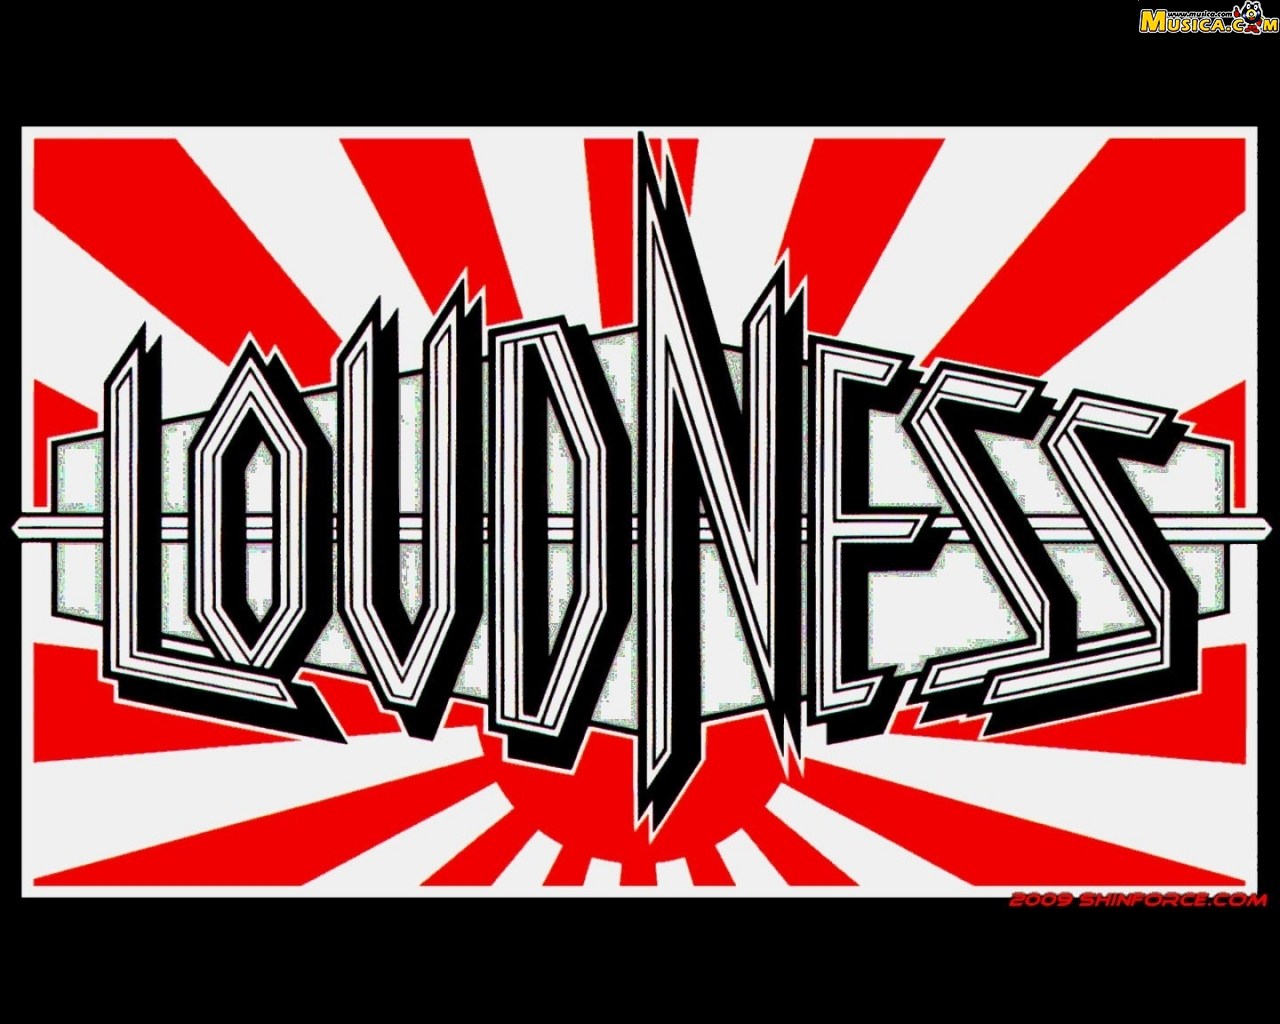 Fondo de pantalla de Loudness